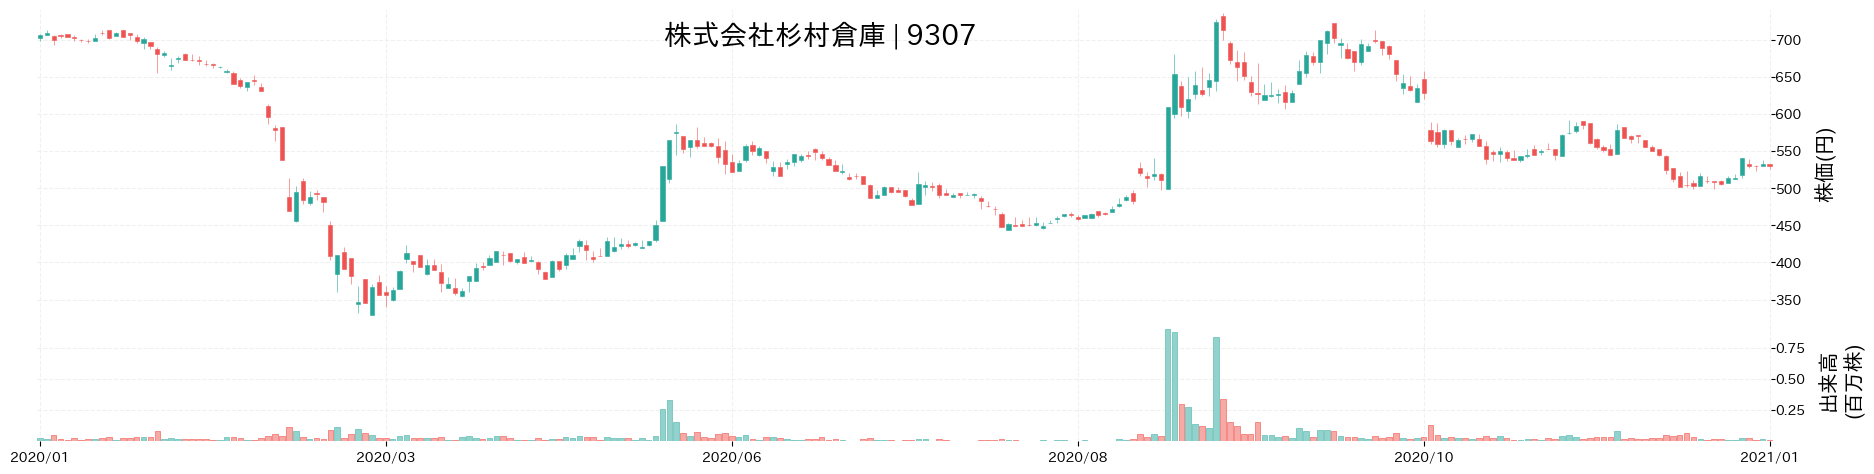 杉村倉庫の株価推移(2020)